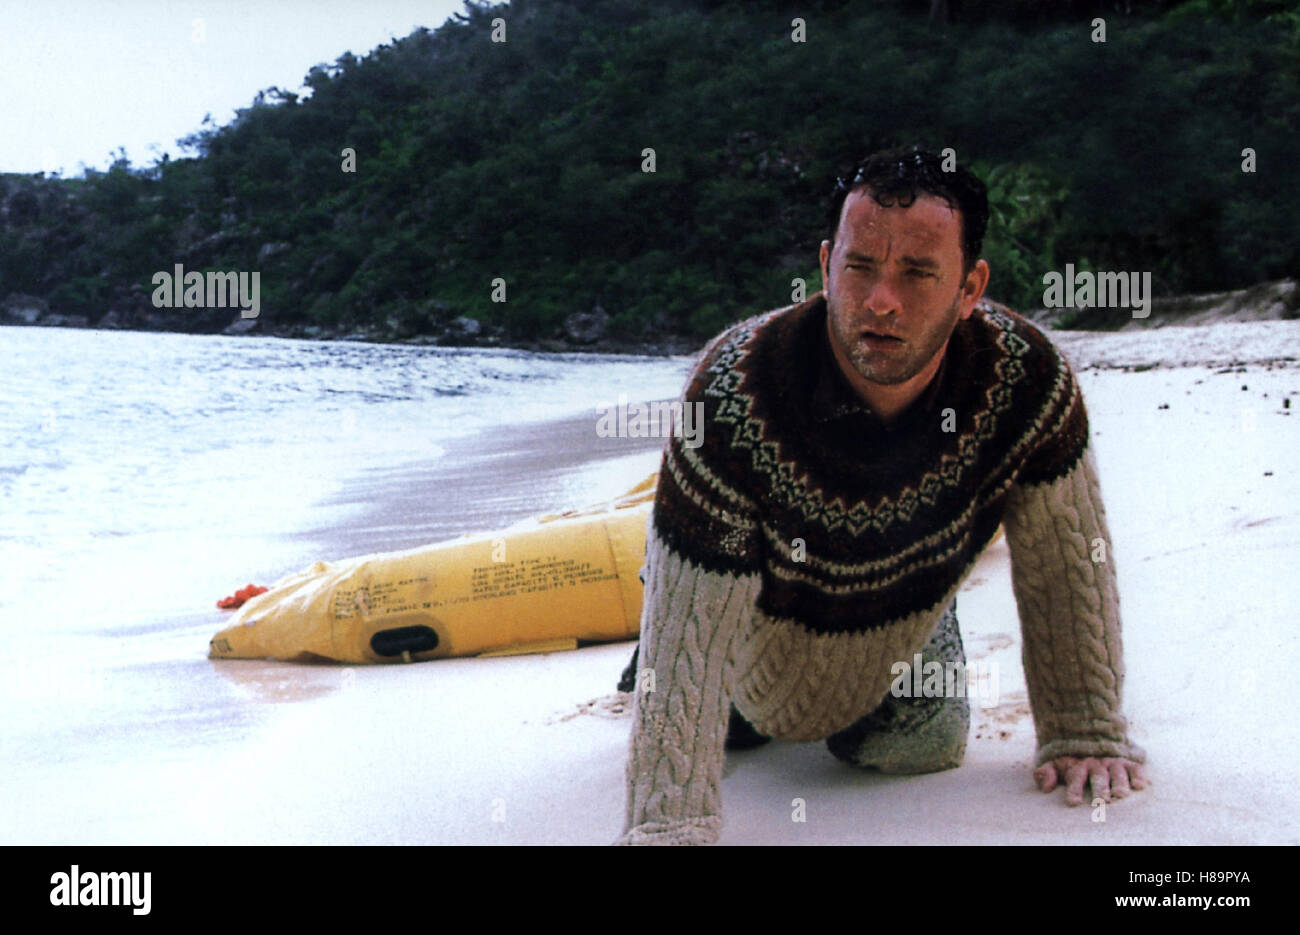 Cast Away - Verschollen, (Cast Away) USA 2000, Regie: Robert Zemeckis, Tom Hanks, Stichwort: Robinson, Schiffbruch, Strand, sabbia, Insel, Schlauchboot Foto Stock